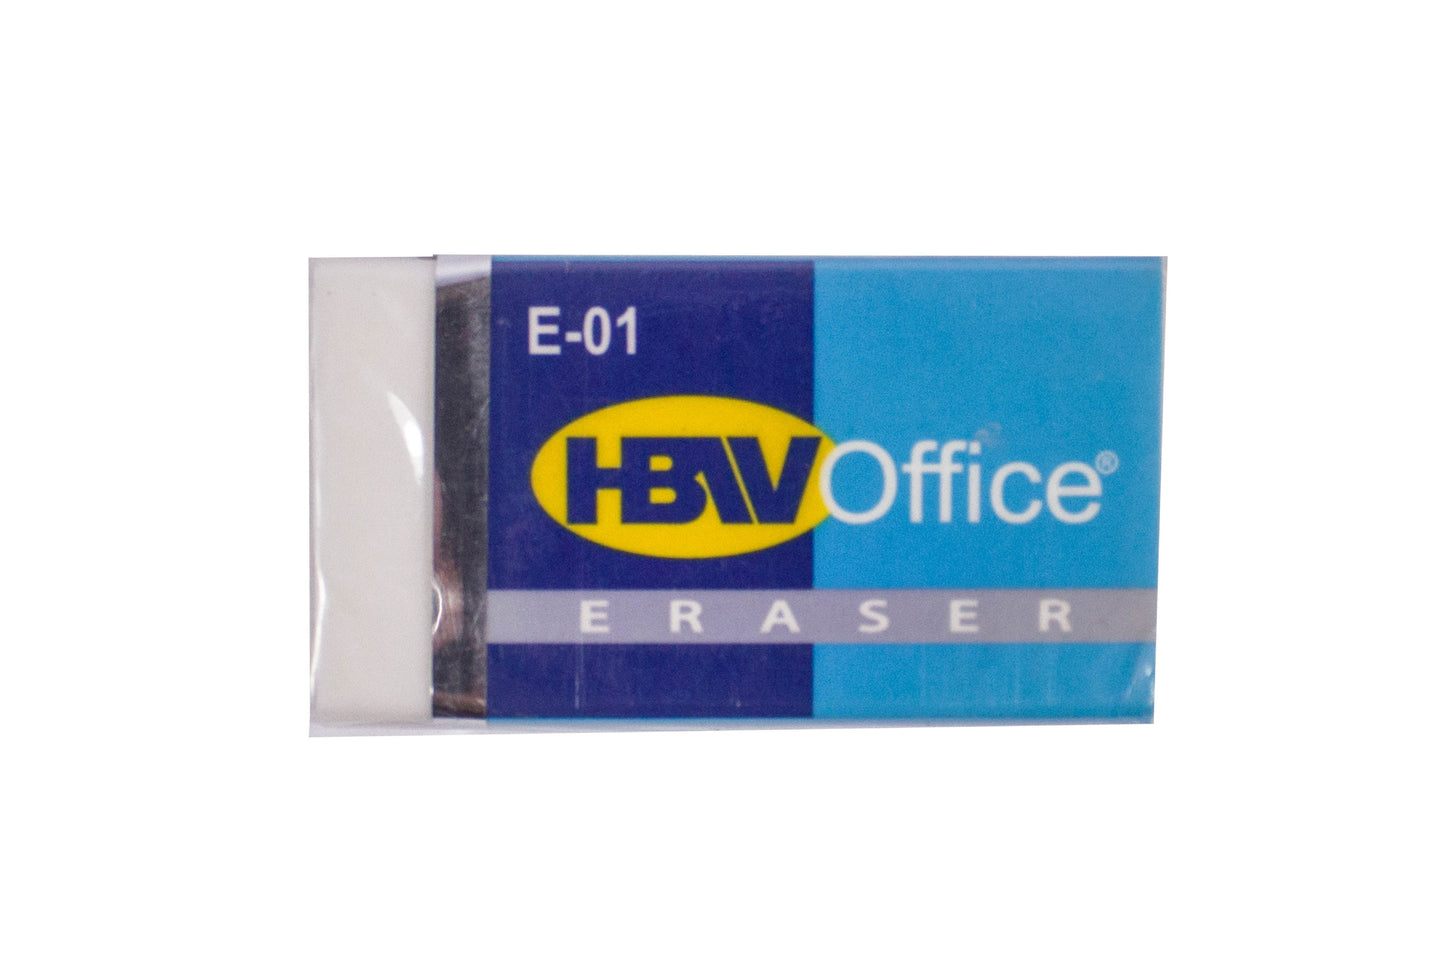 HBW Office Eraser / E-01